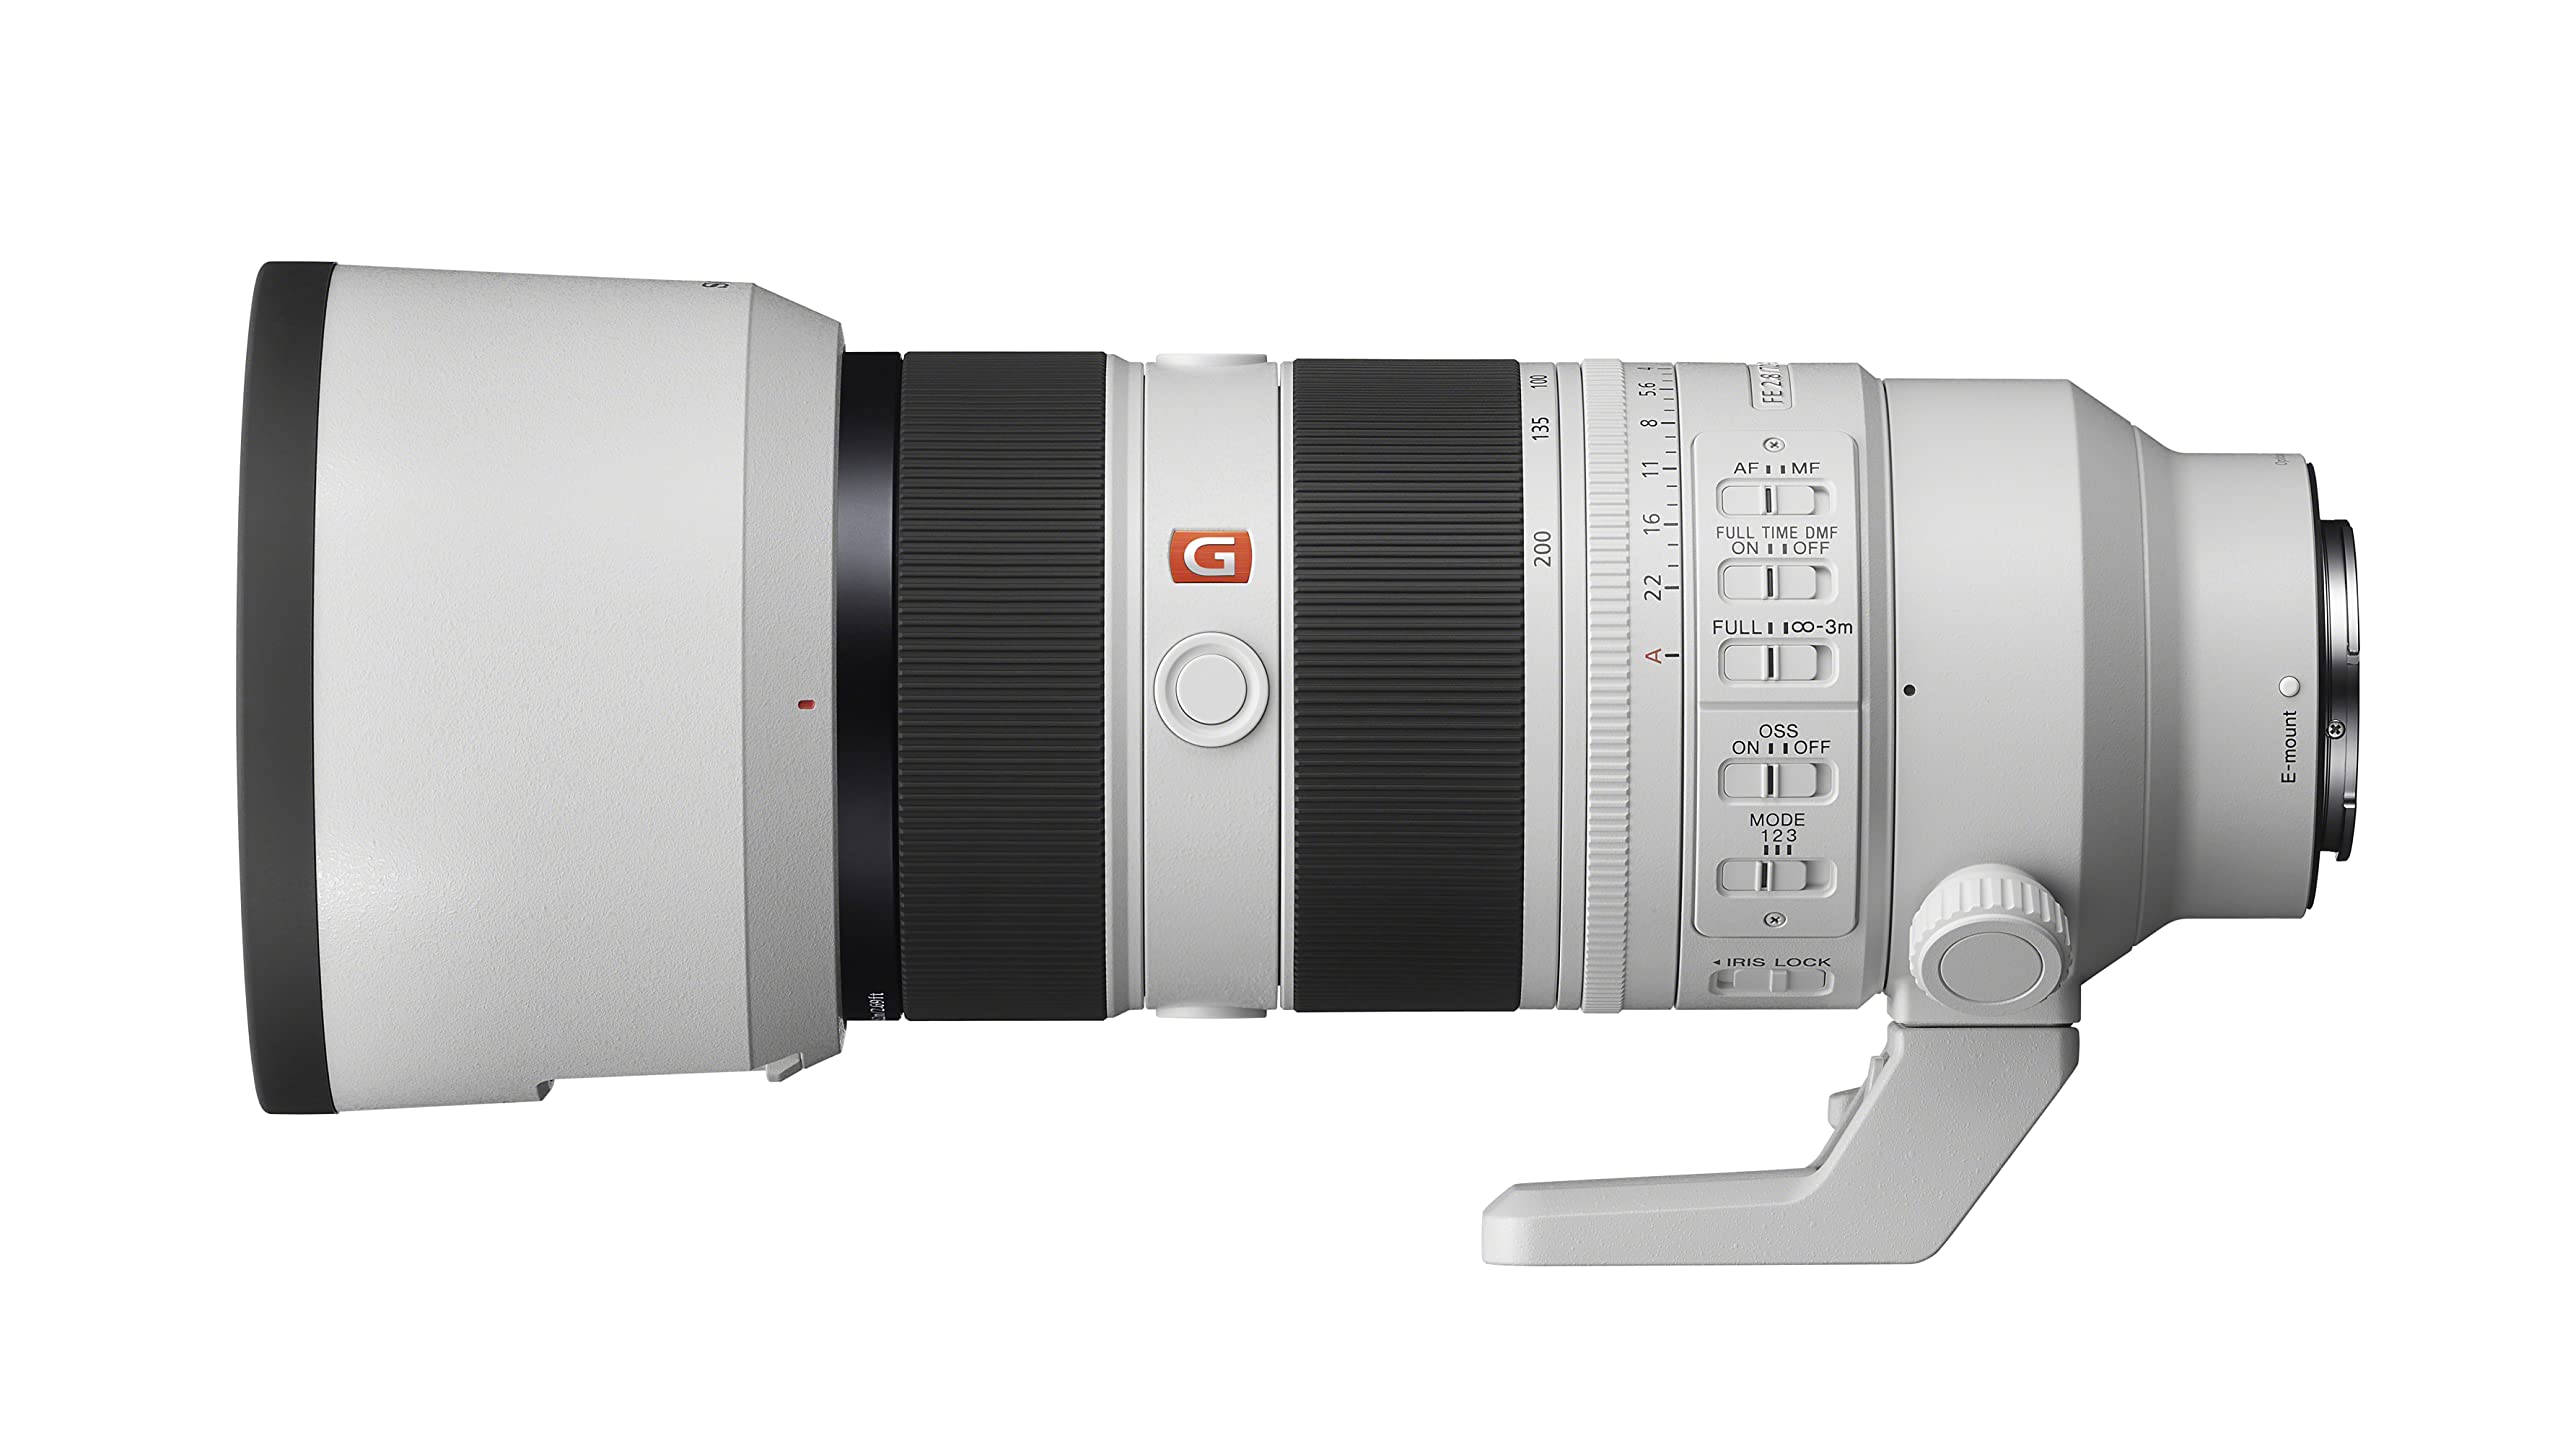 Sony FE 70-200mm F2.8 GM OSS II Full-Frame Constant-Aperture telephoto Zoom G Master Lens (SEL70200GM2)